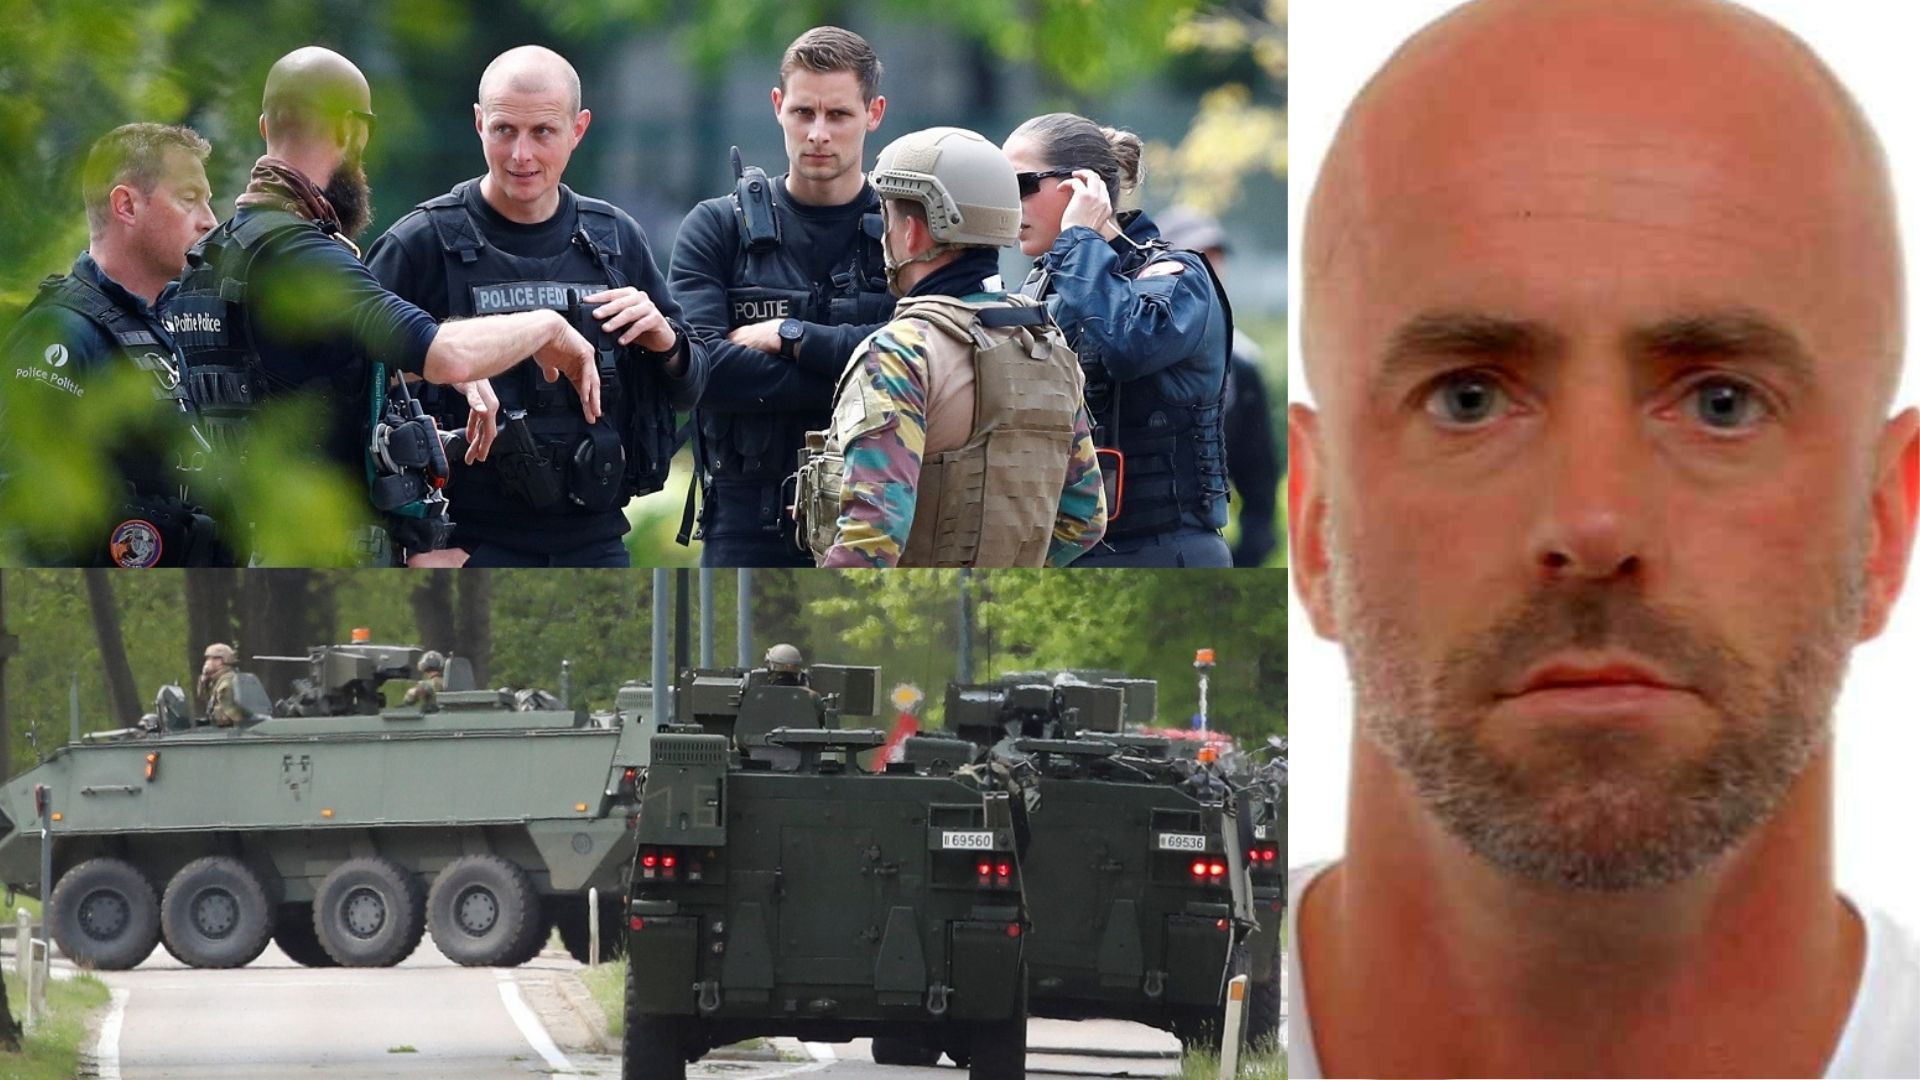 Bélgica en Alerta: La policía busca a un militar fuertemente armado tras amenazar a un virólogo mediático (FOTOS)